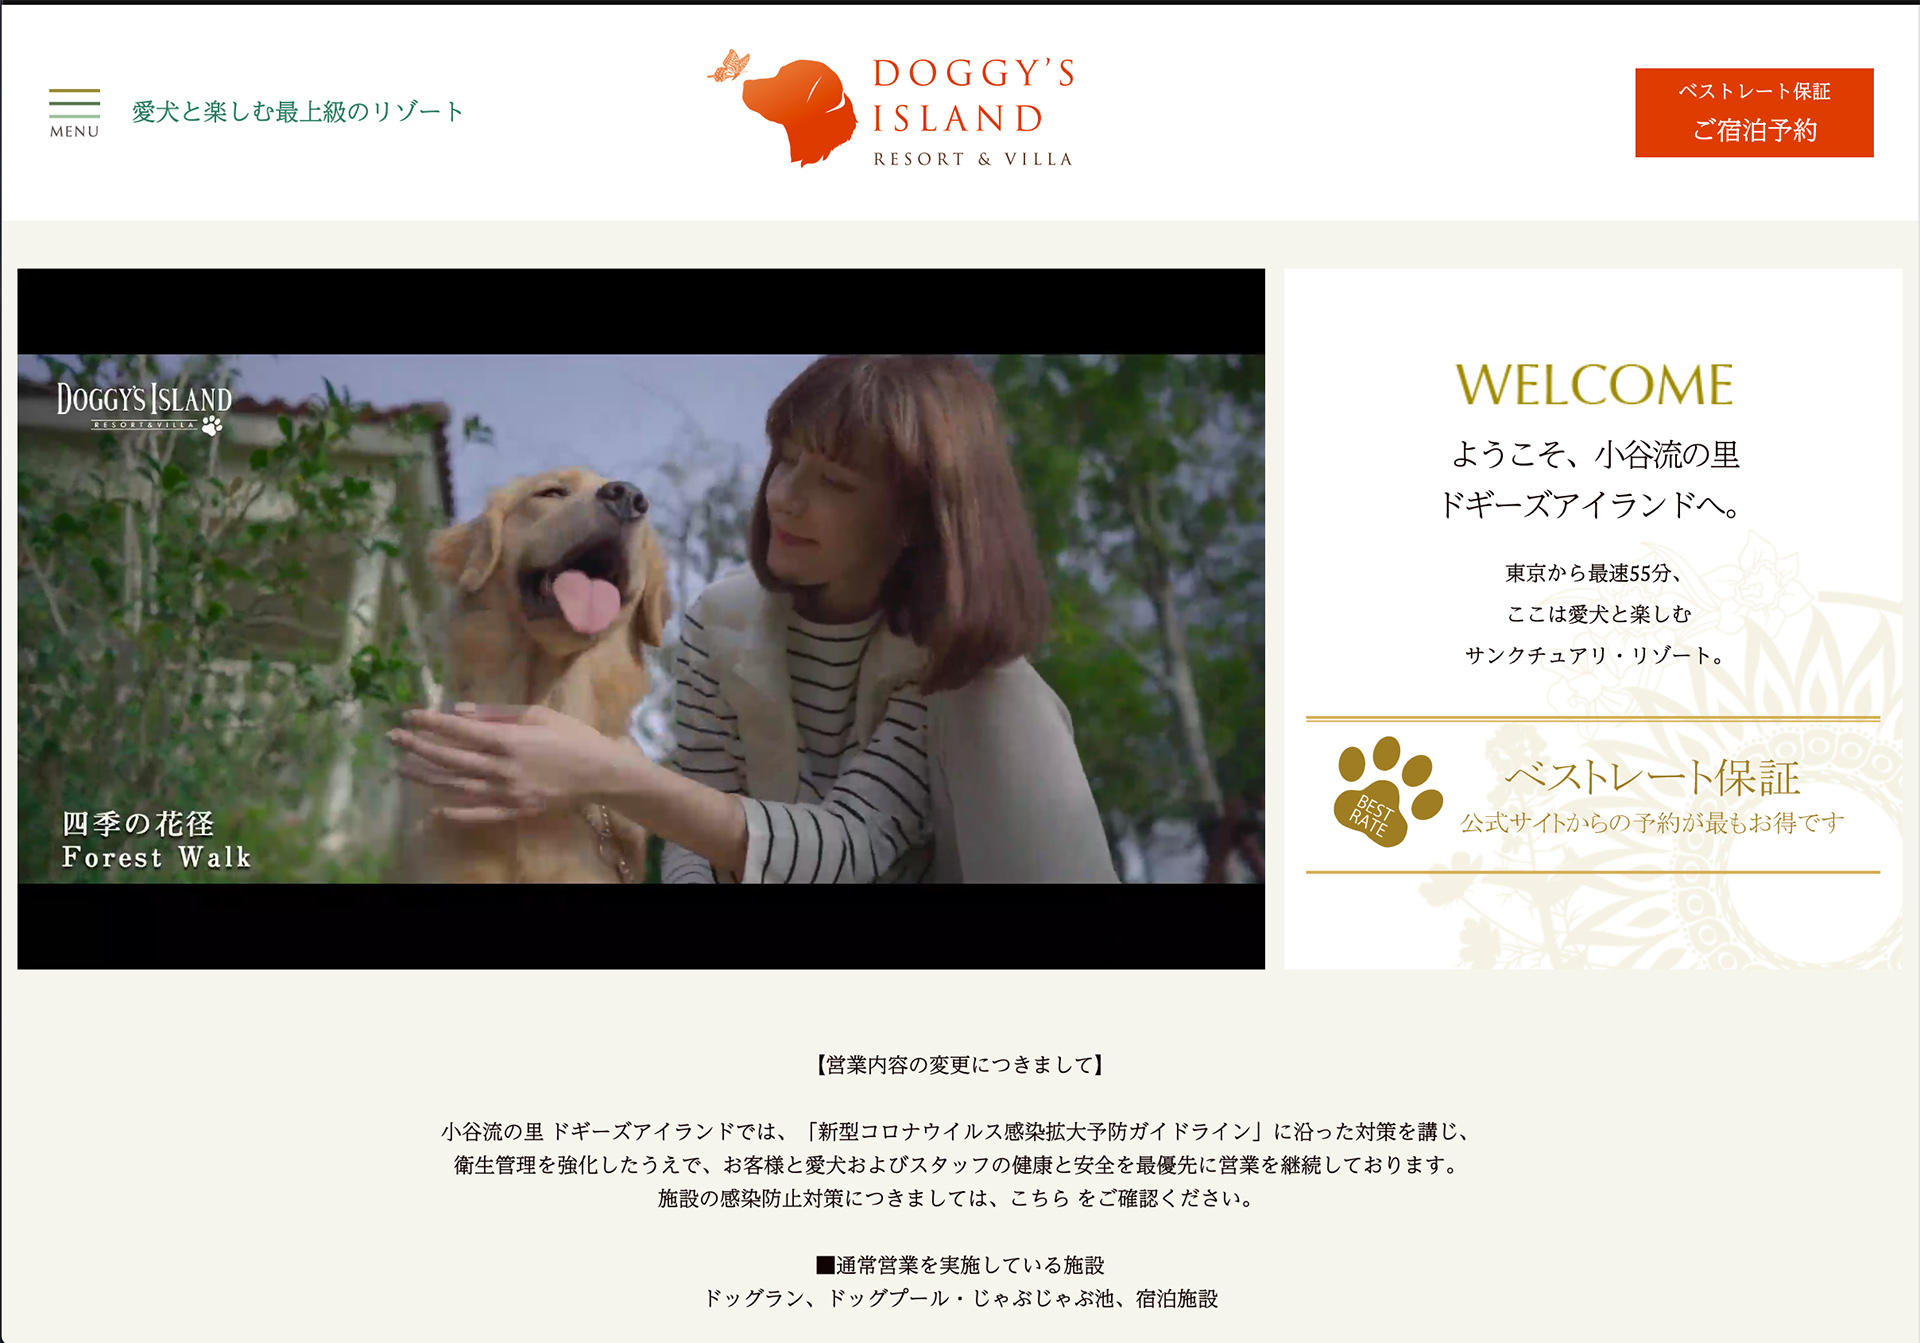 「小谷流の里 ドギーズアイランド」公式サイトから。こちらは愛犬家のためのリゾート施設となっている